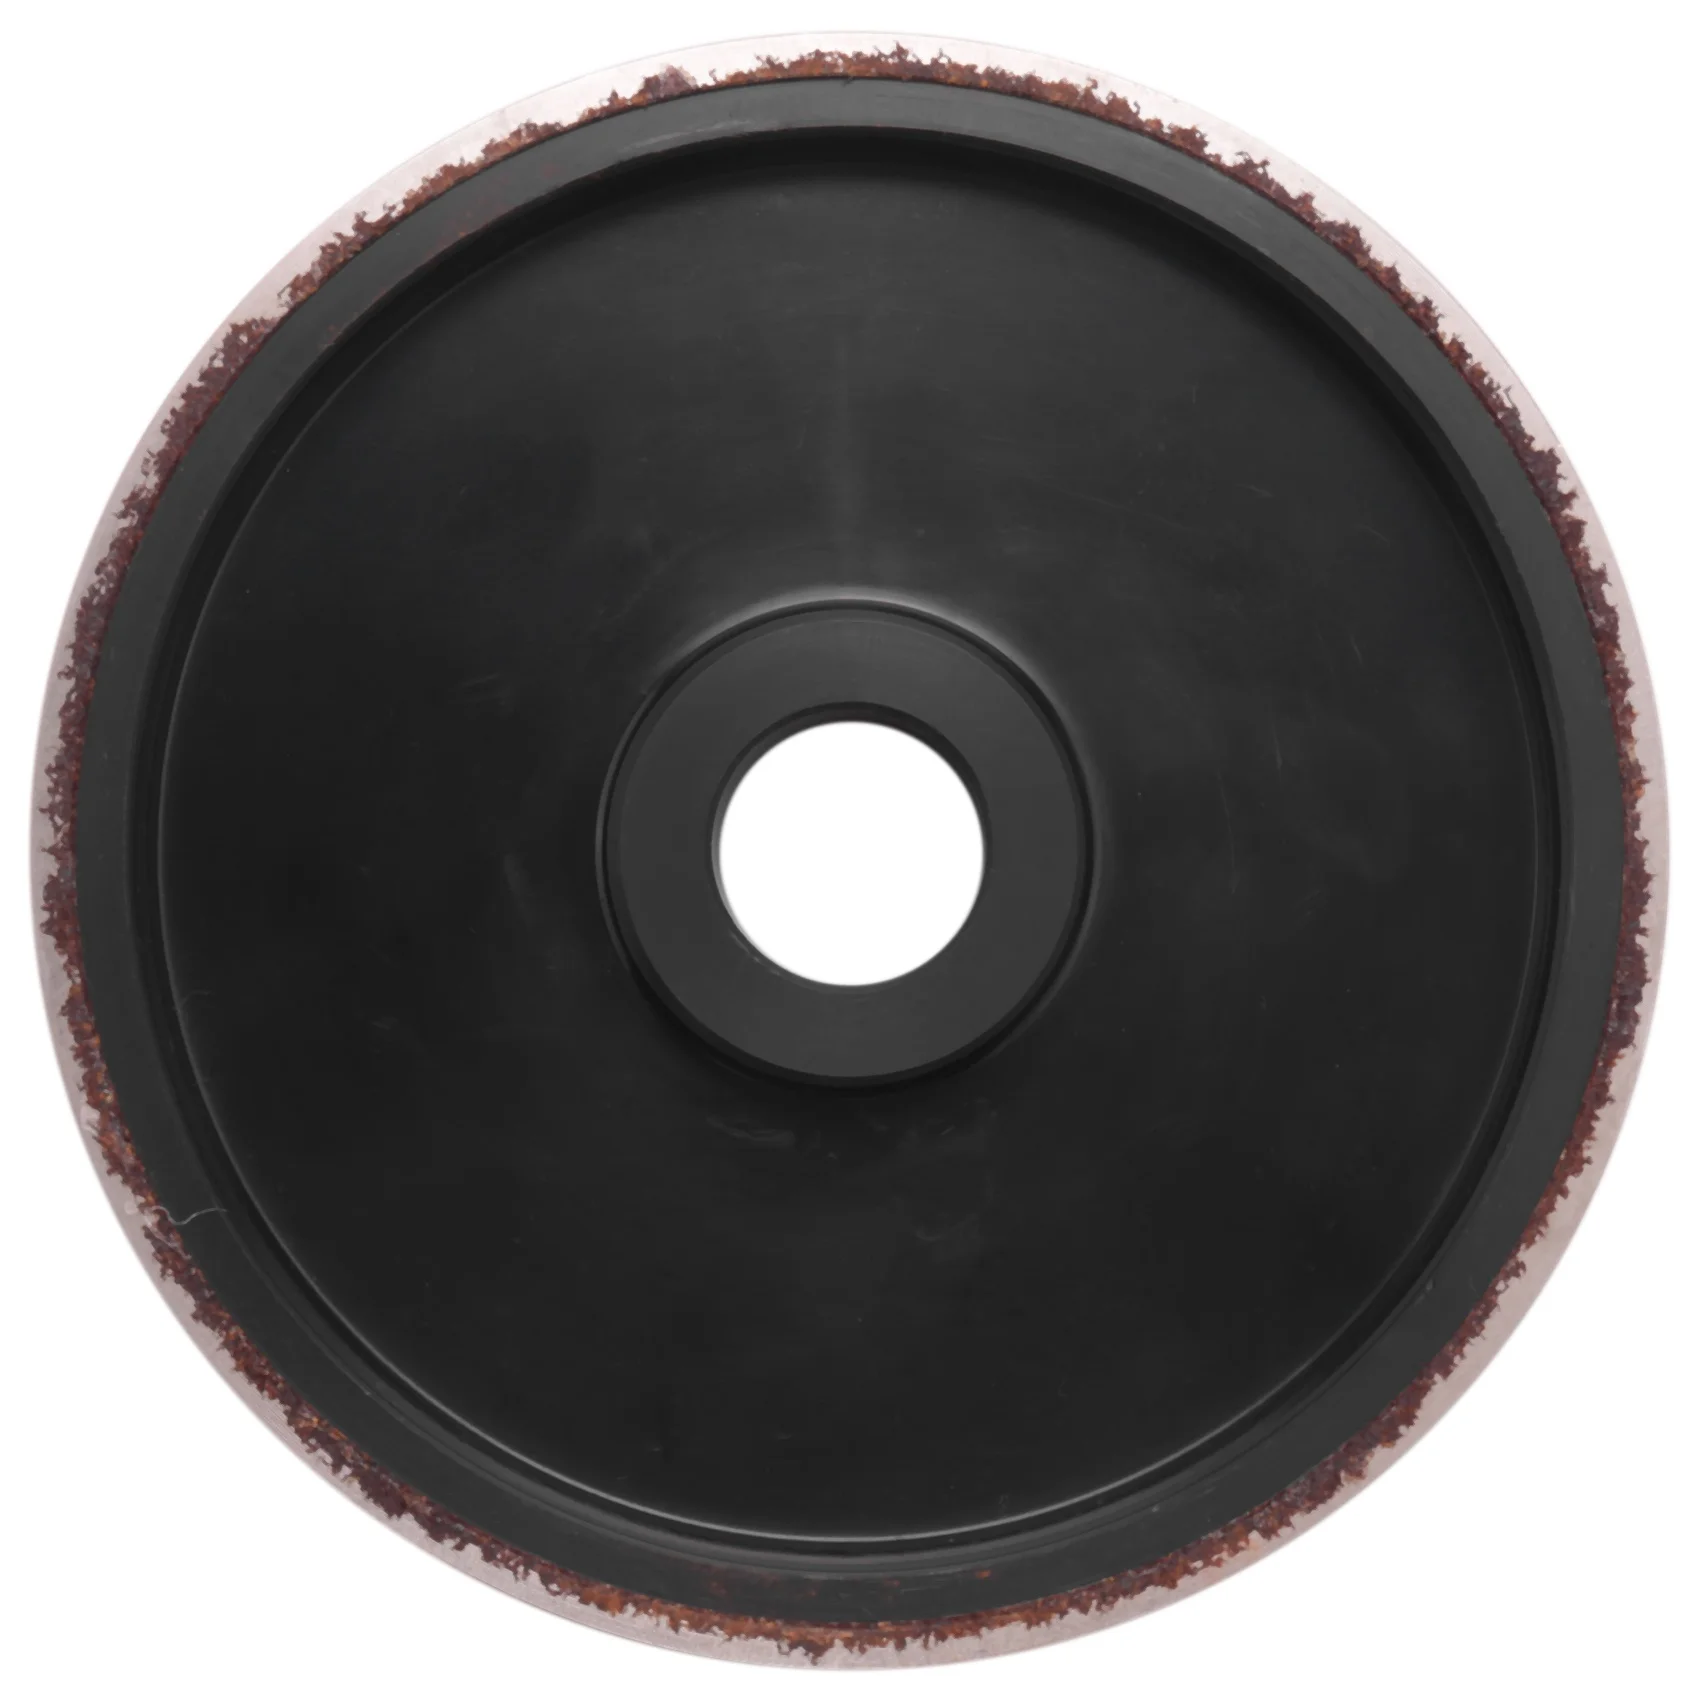 

Алмазный шлифовальный круг для ювелирных изделий Lapidary 6 дюймов X1 дюймов с отверстием для Бора 1 дюйм (для драгоценного гранита, стекла, мрамора)-3000